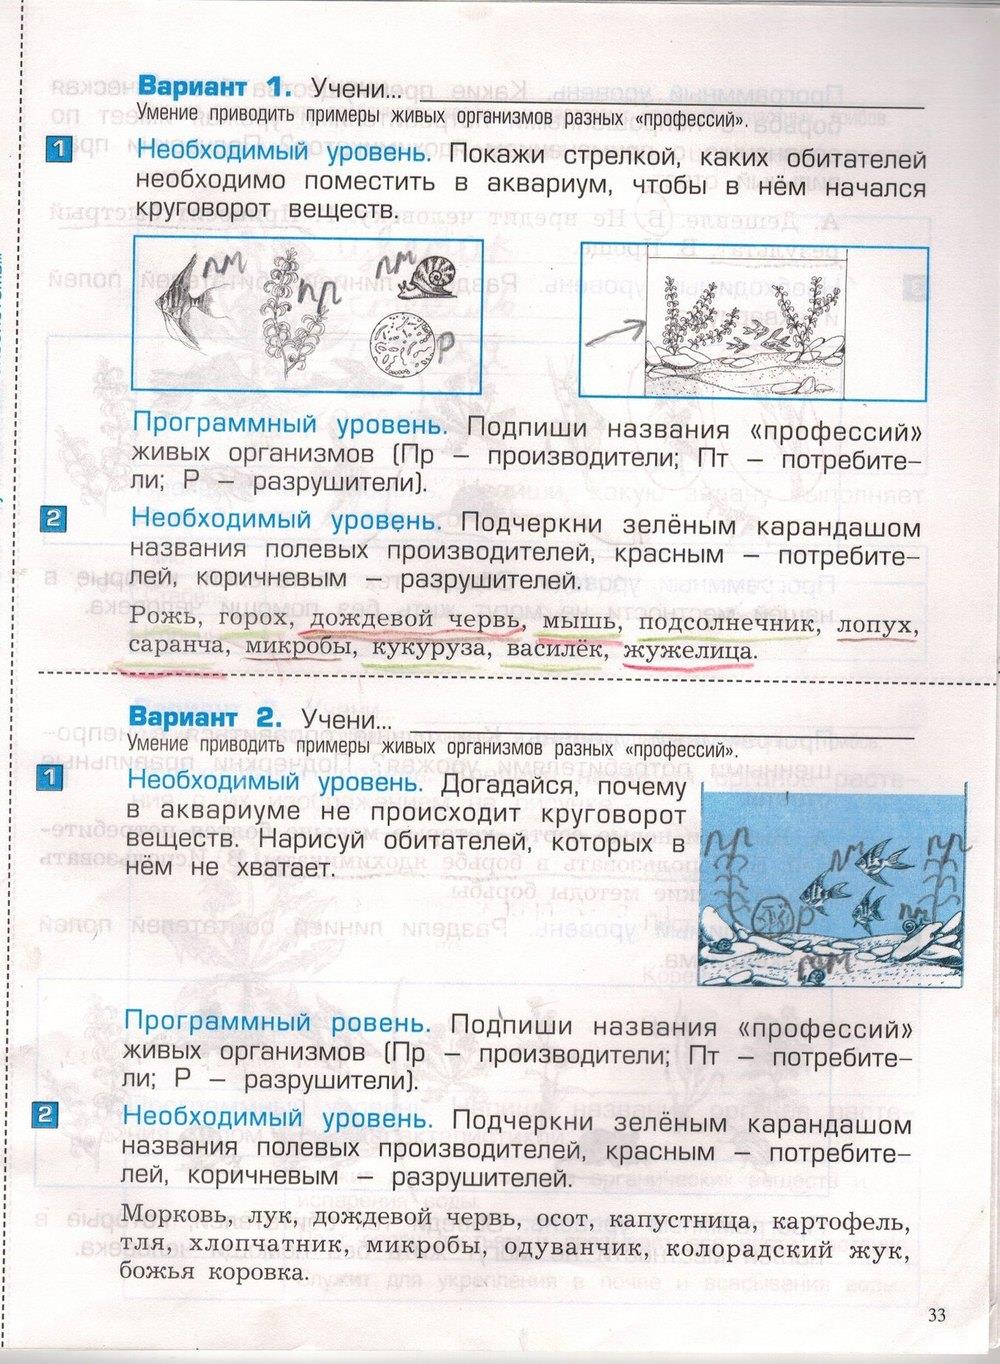 гдз 3 класс проверочные и контрольные работы часть 1 страница 33 окружающий мир Вахрушев, Бурский, Родыгина